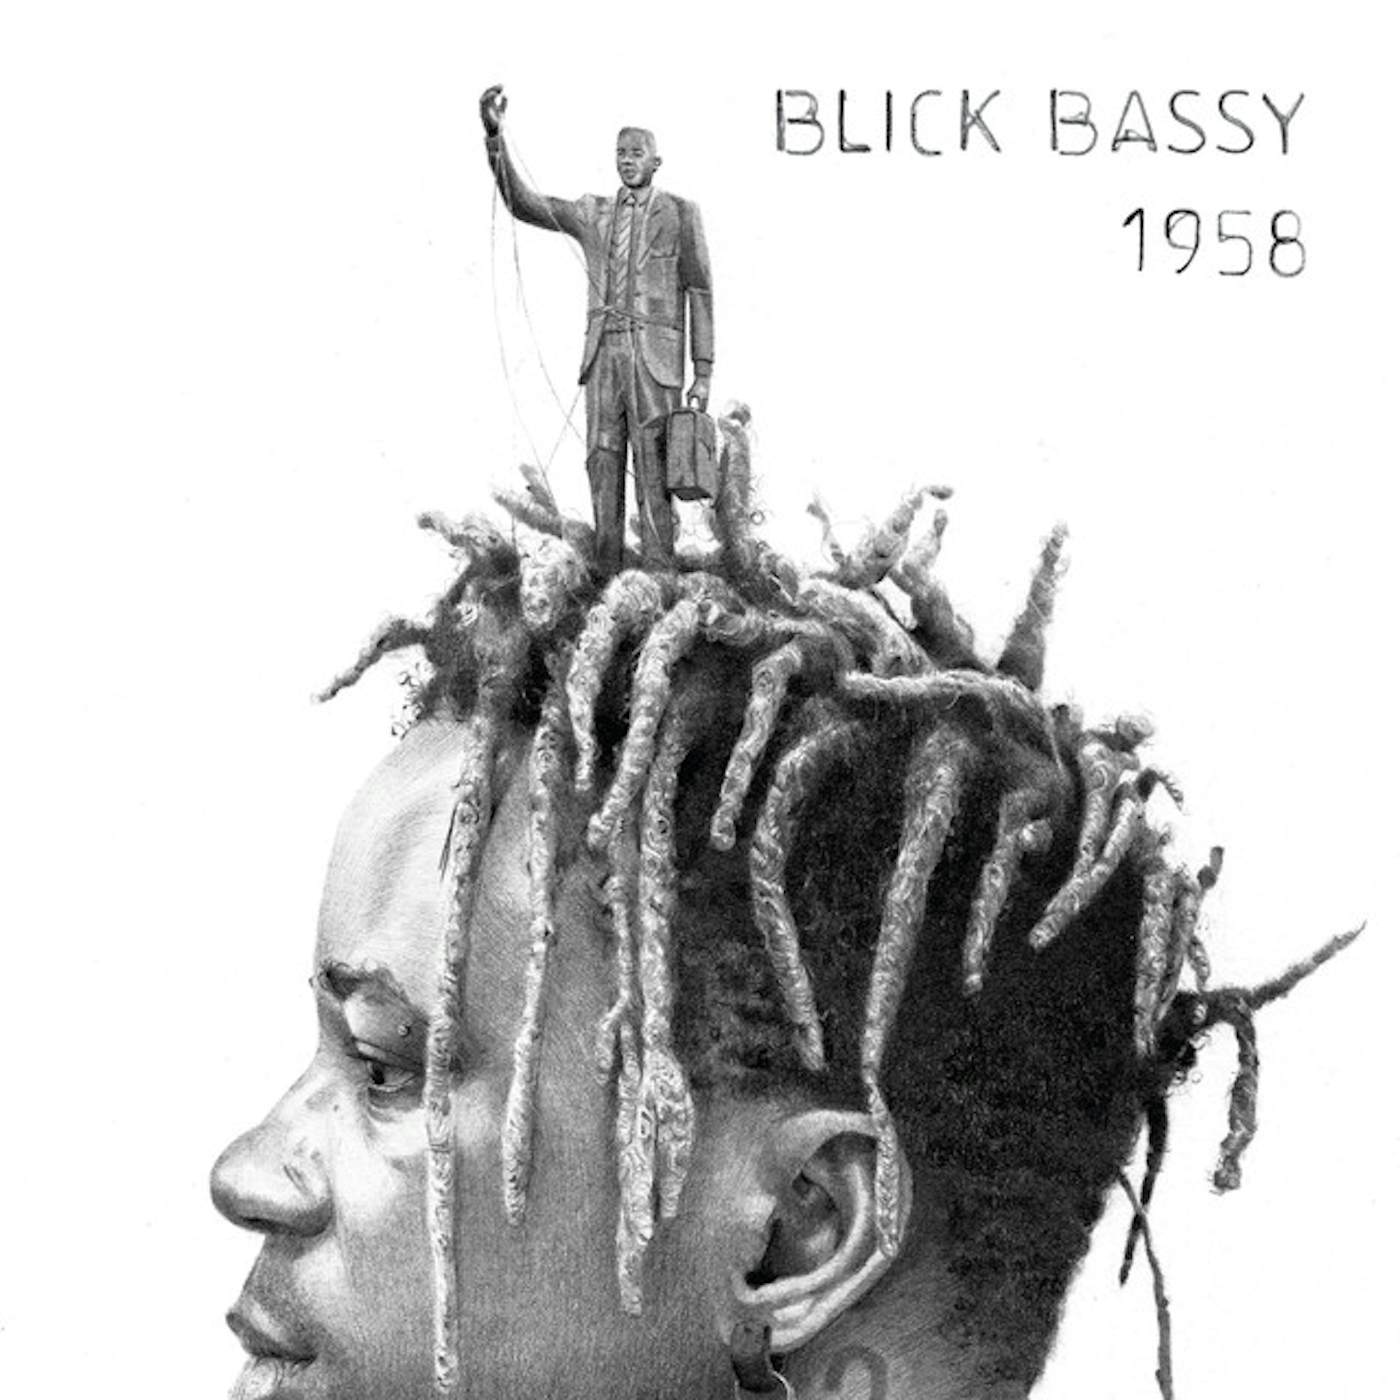 Blick Bassy 1958 Vinyl Record